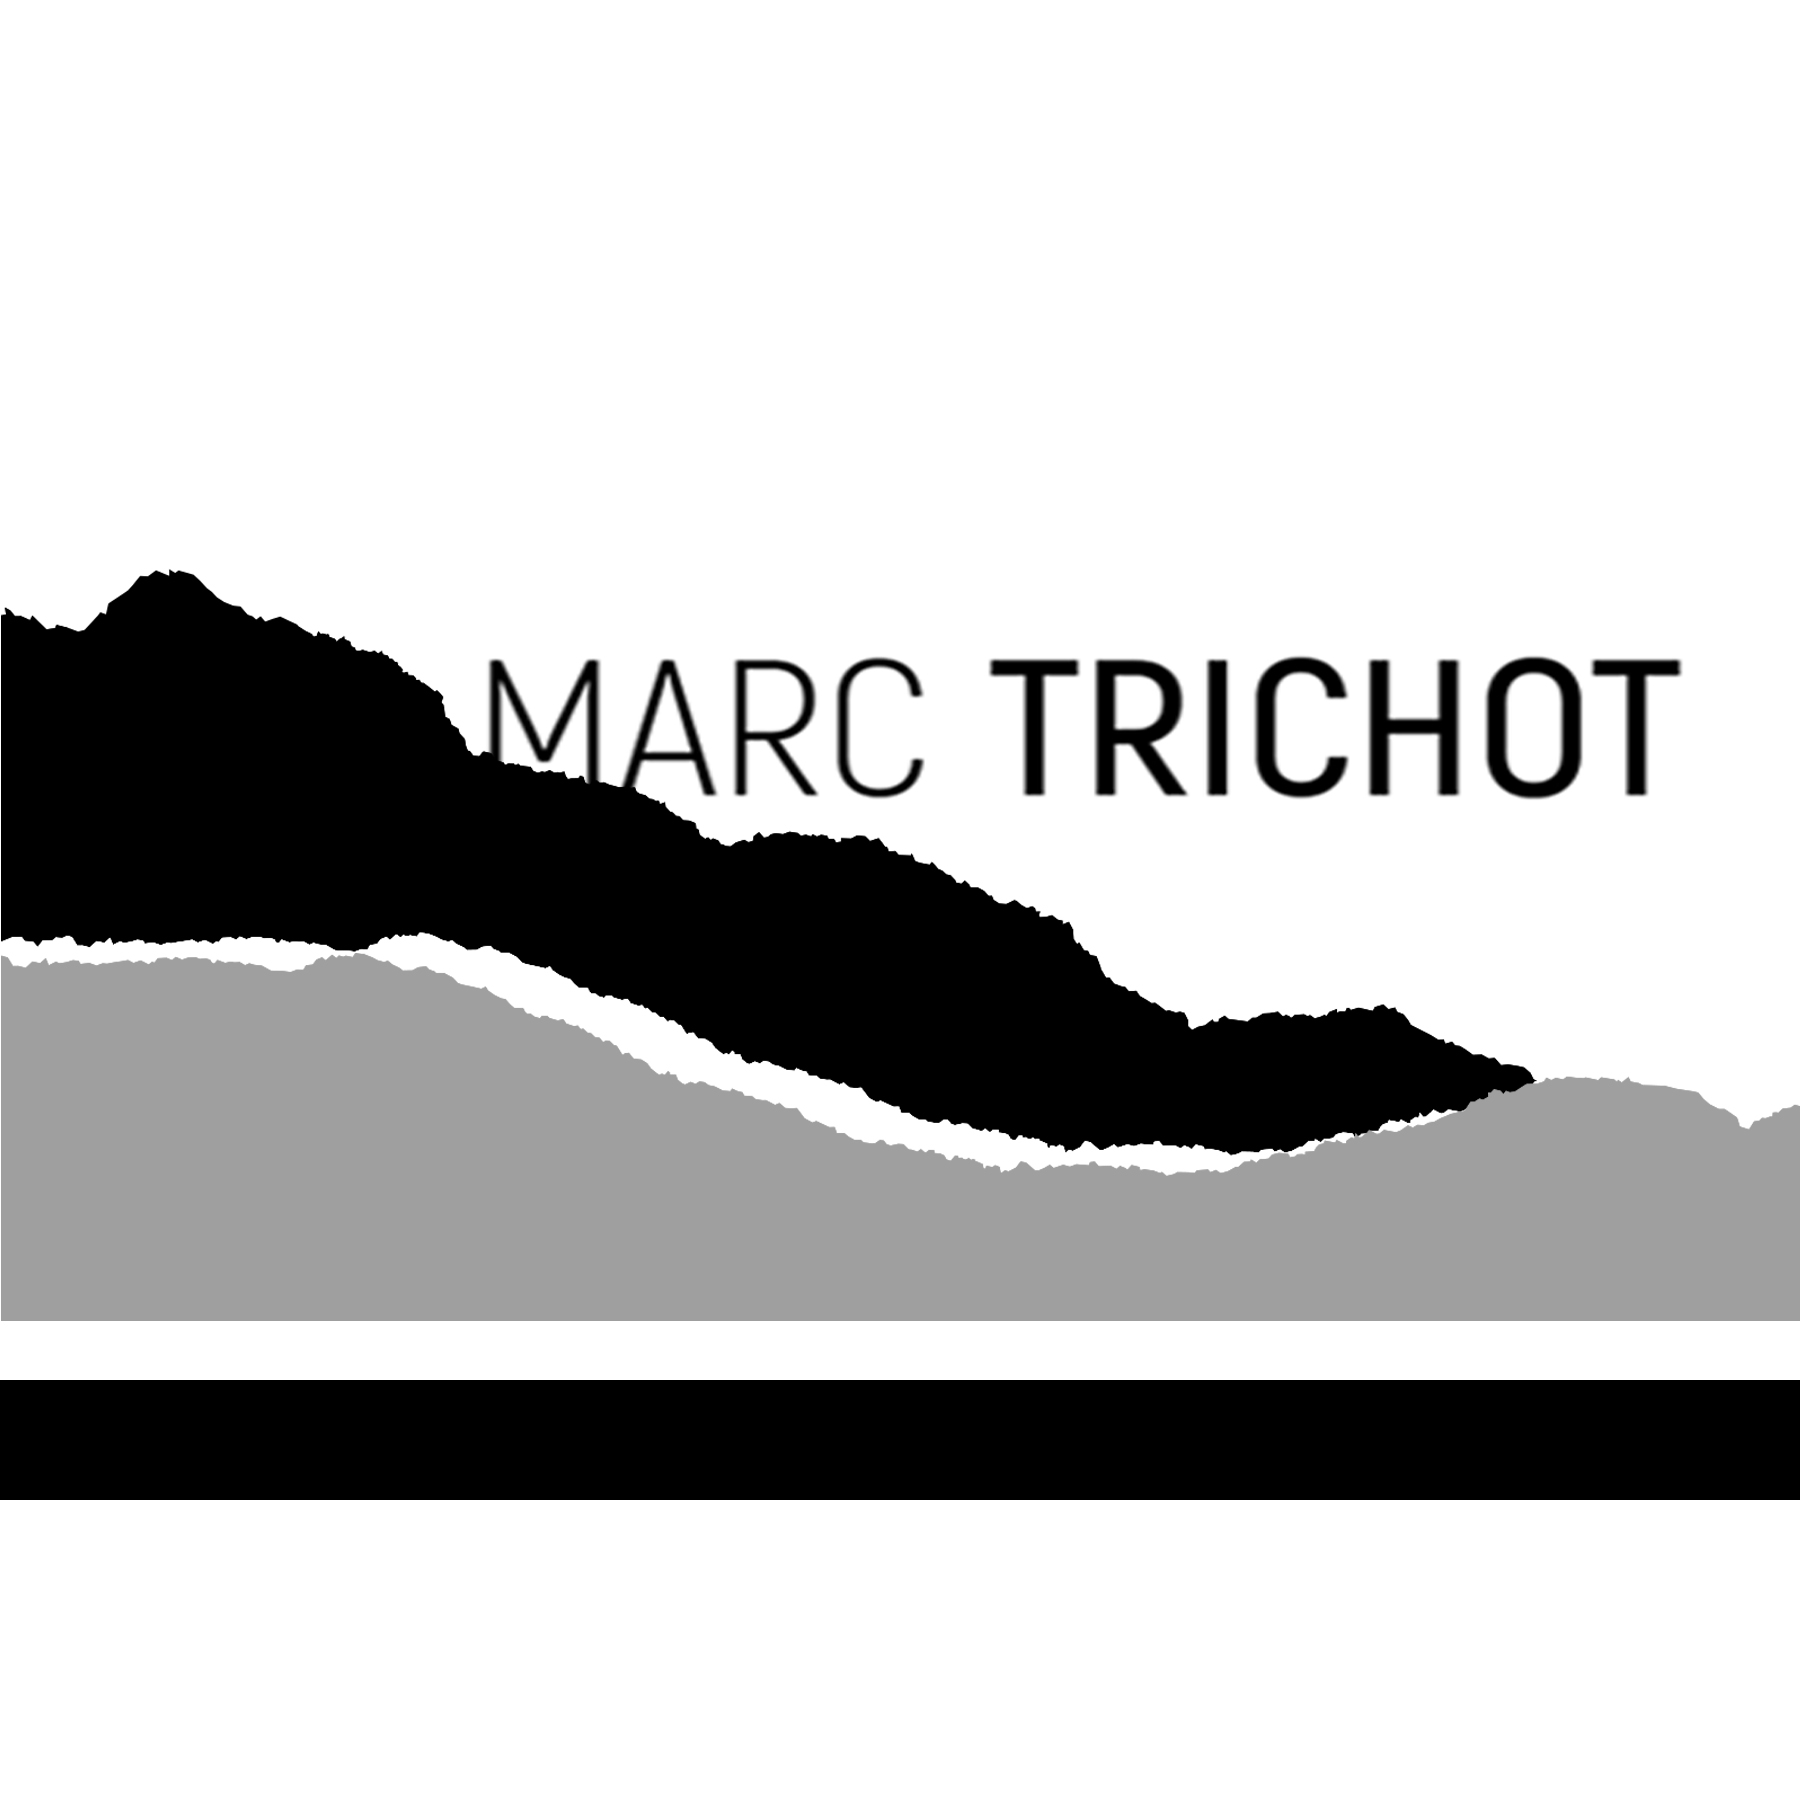 Marc Trichot